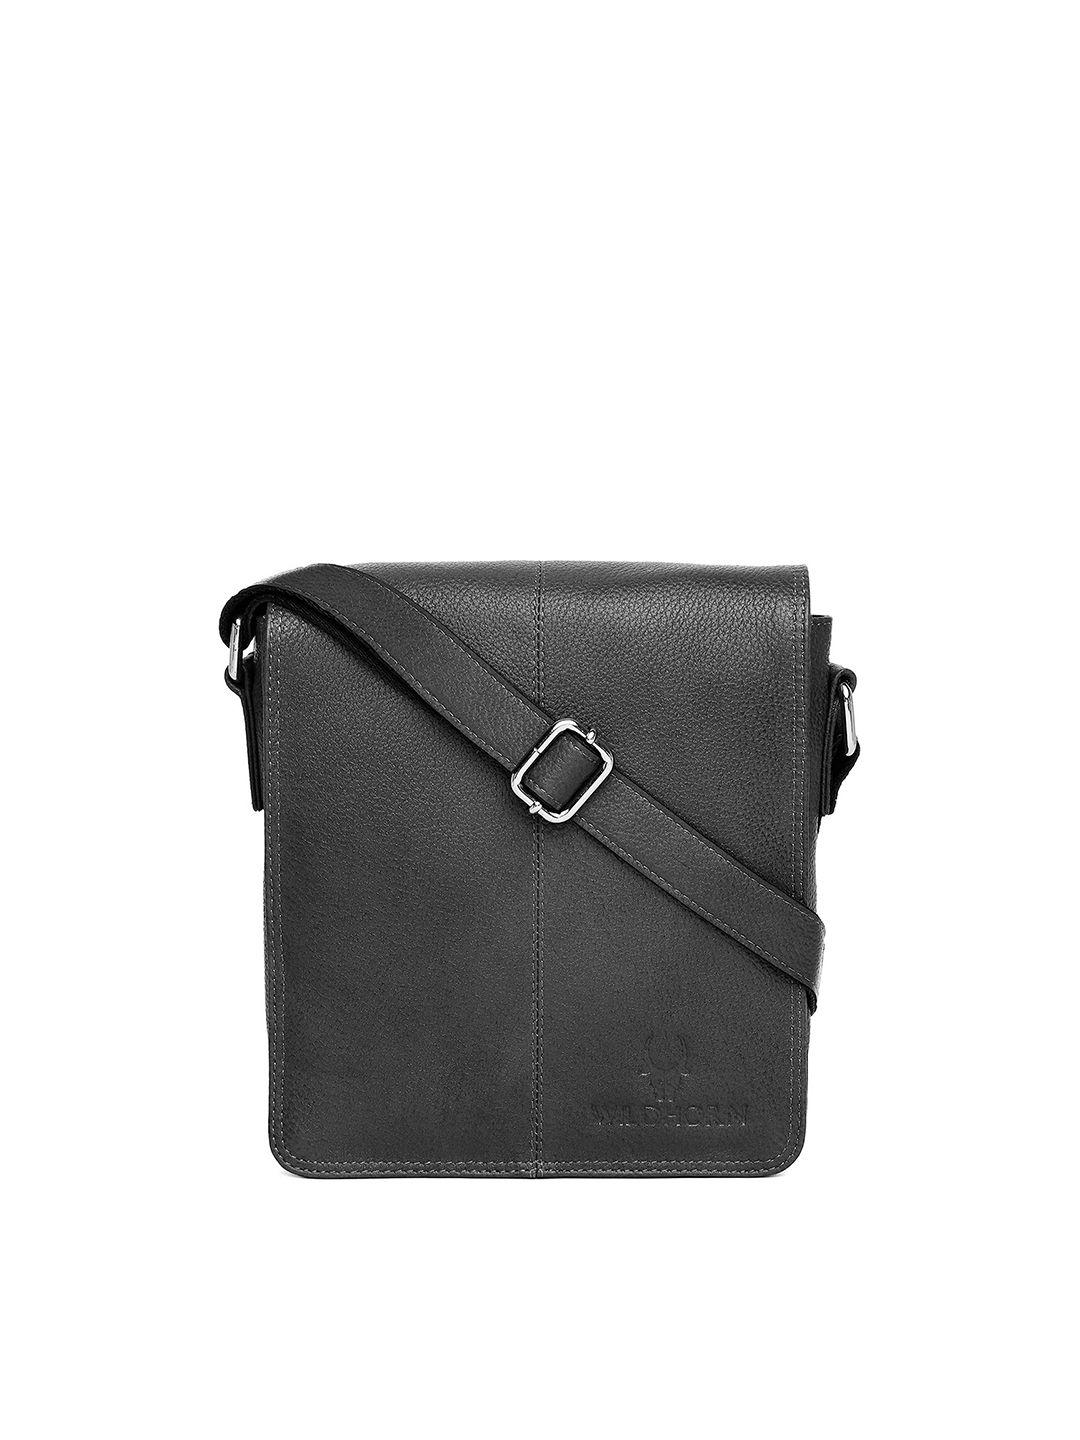 wildhorn men black textured leather messenger bag